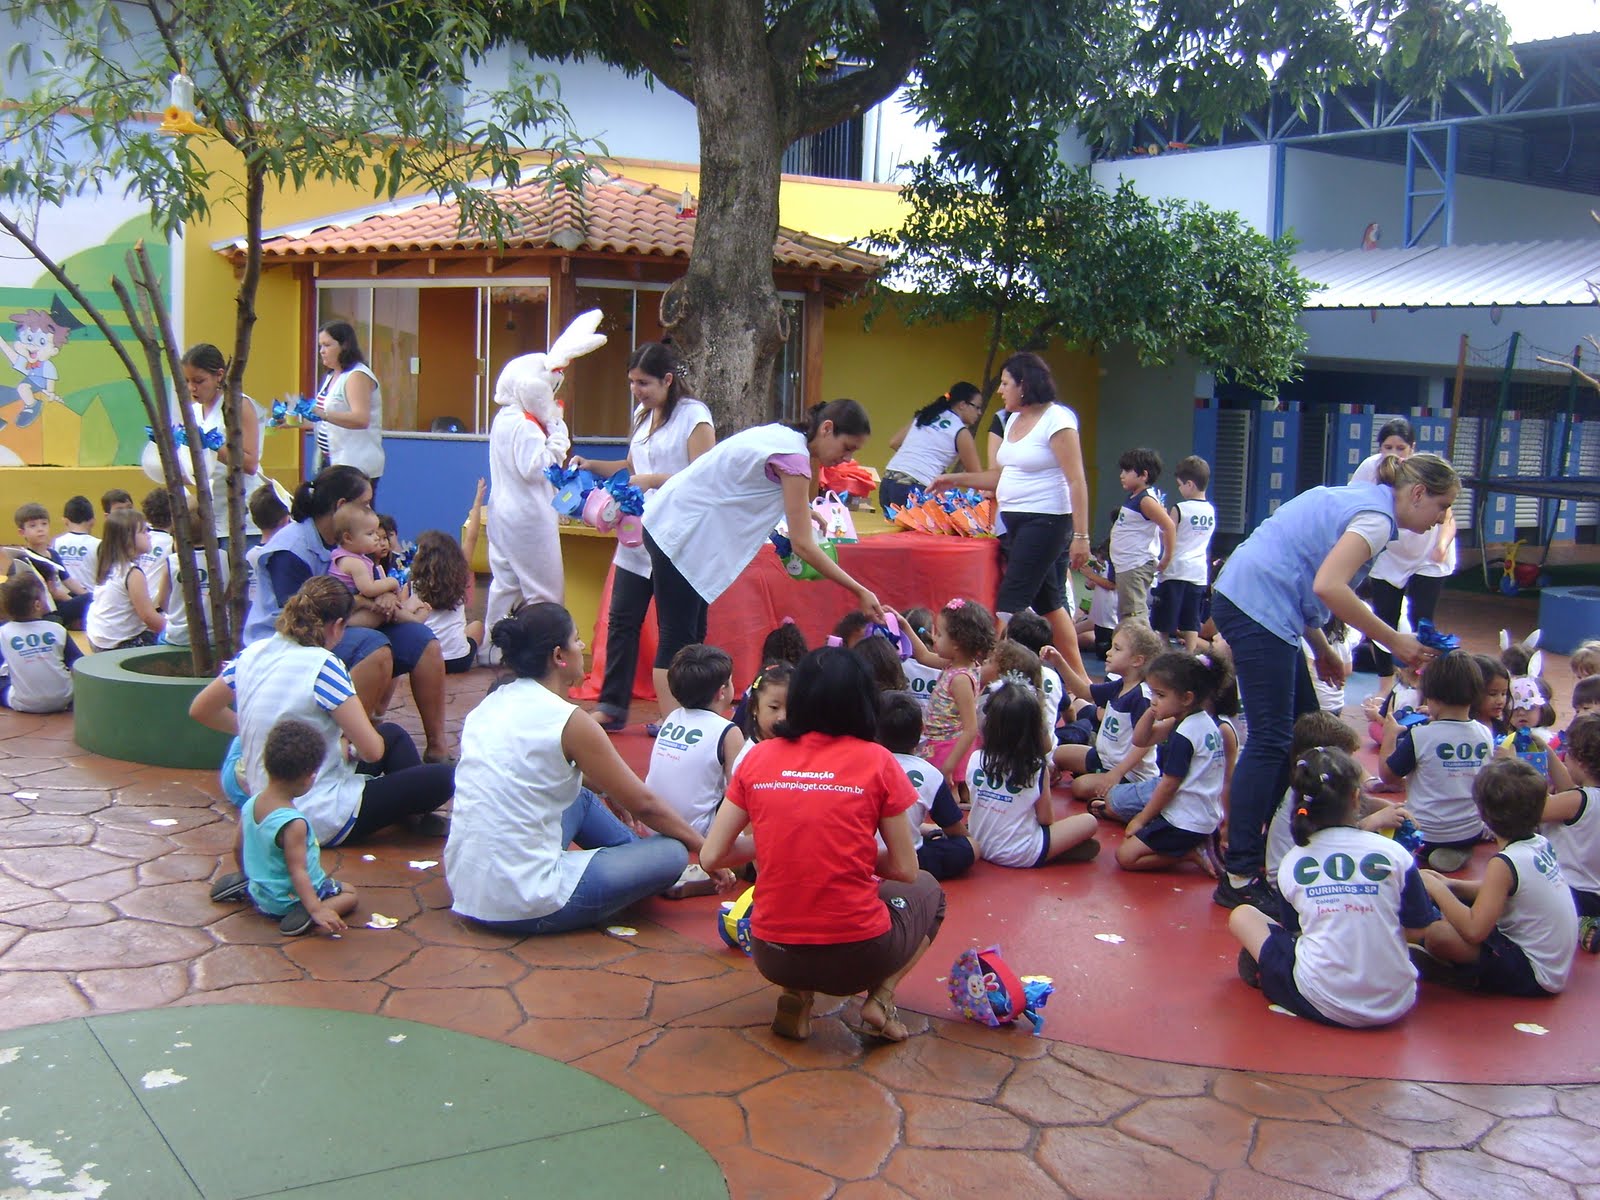 Colégio COC Jean Piaget de Ourinhos lança concurso de bolsas para o 2º ano  do Ensino Fundamental I